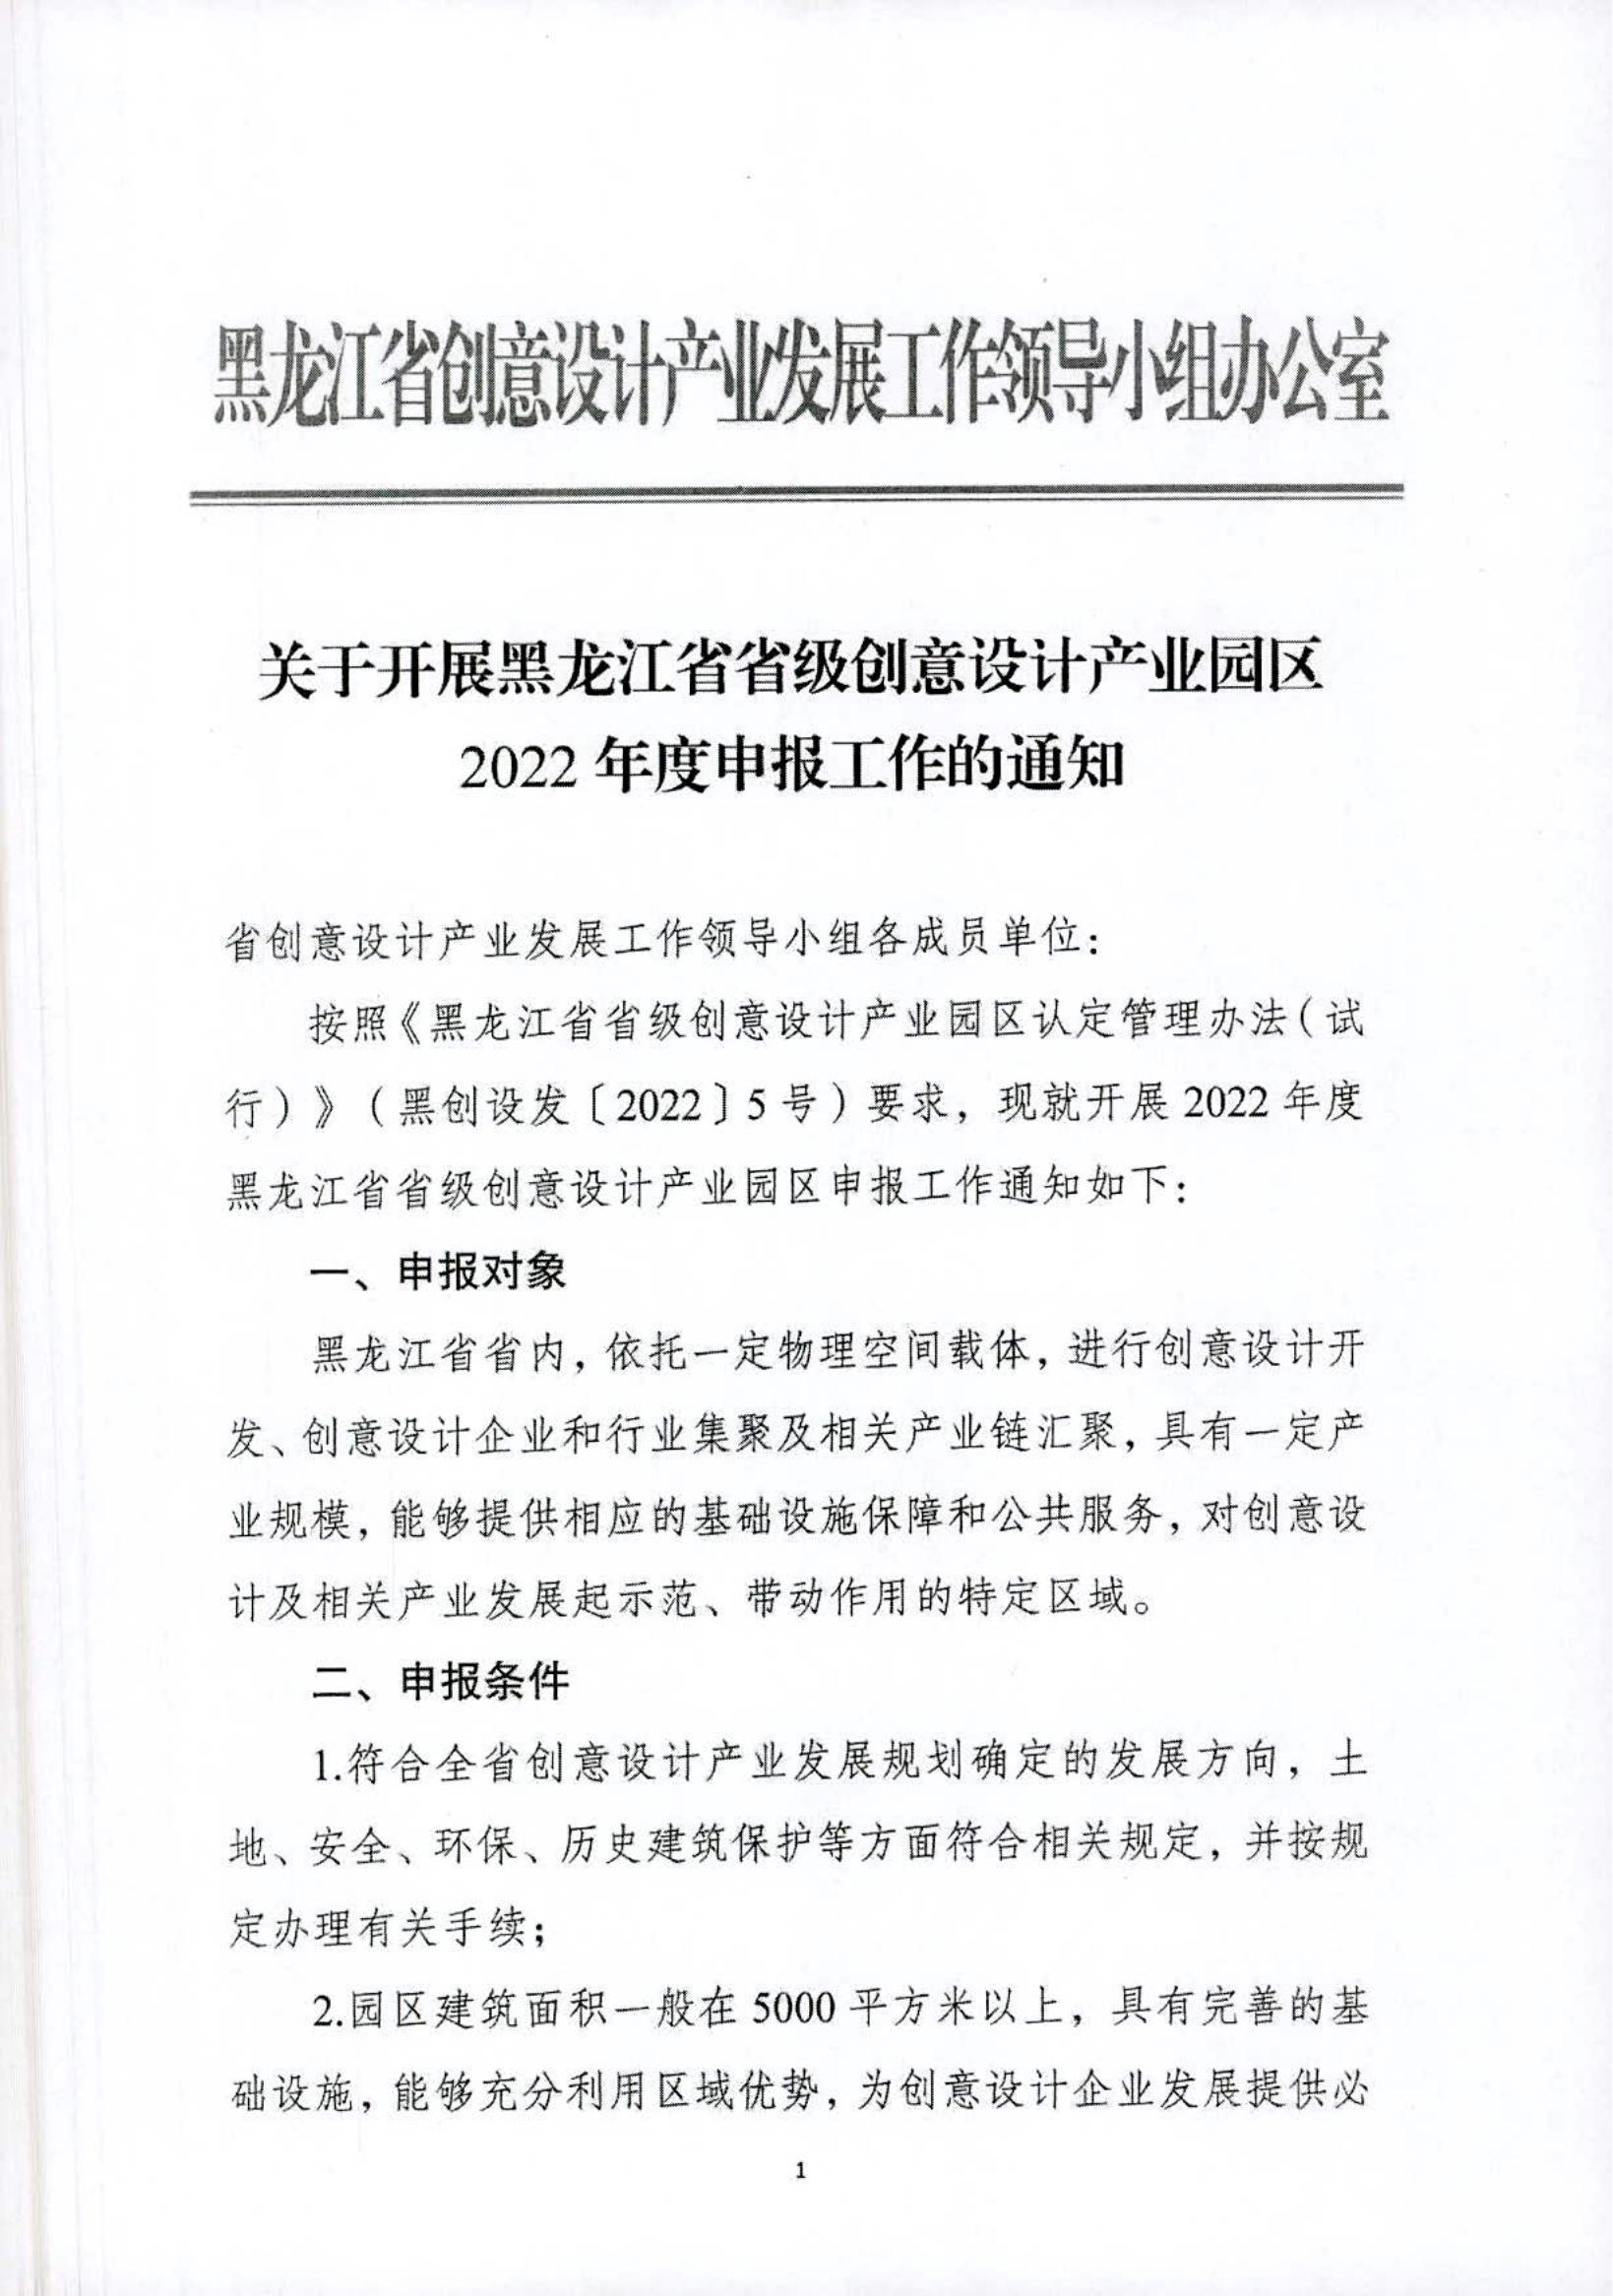 关于开展黑龙江省省级创意设计产业园区2022年度申报工作的通知_00.jpg